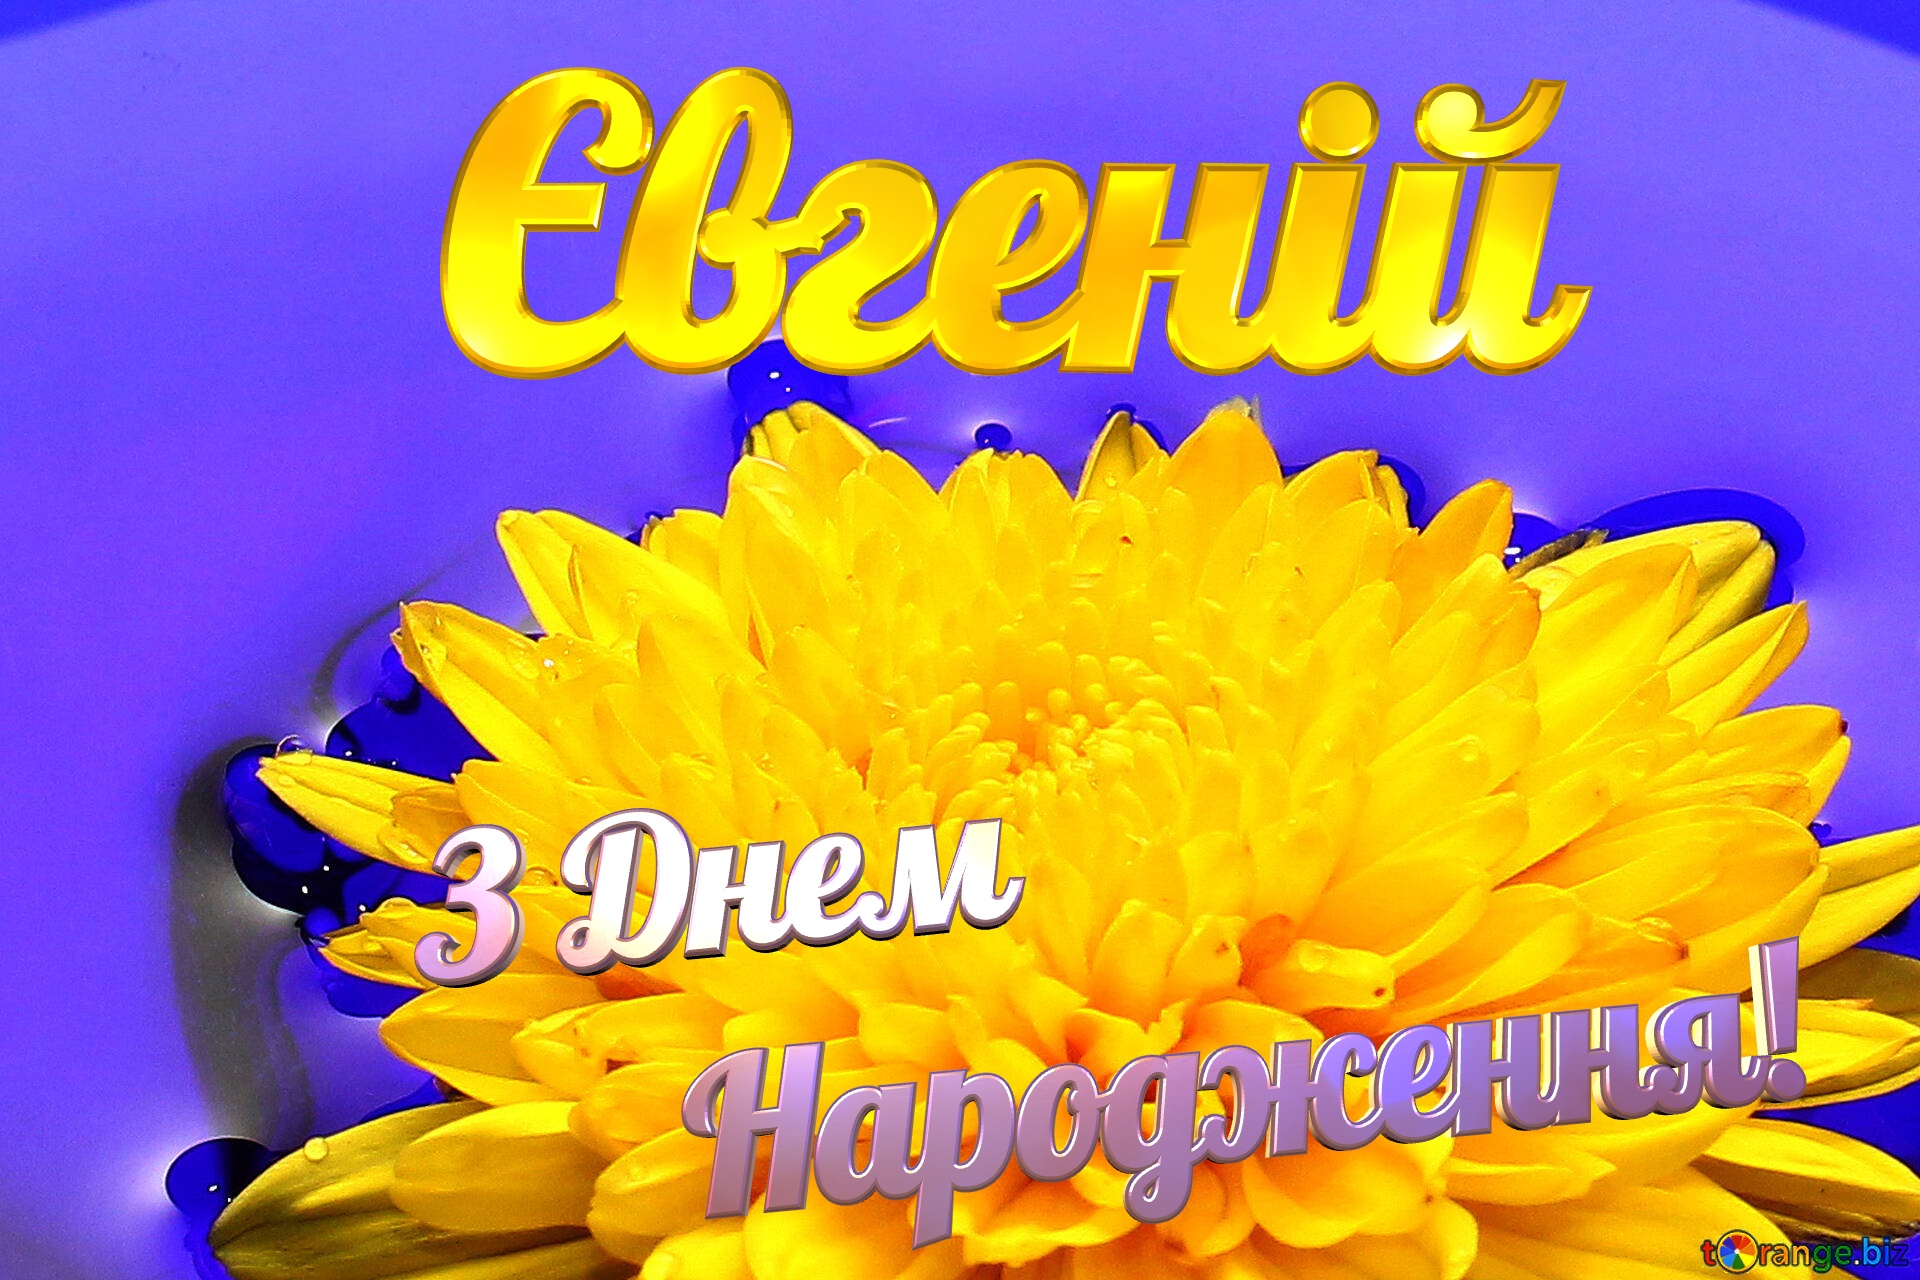 Євгеній З Днем Народження! Ukrainian flower №37279